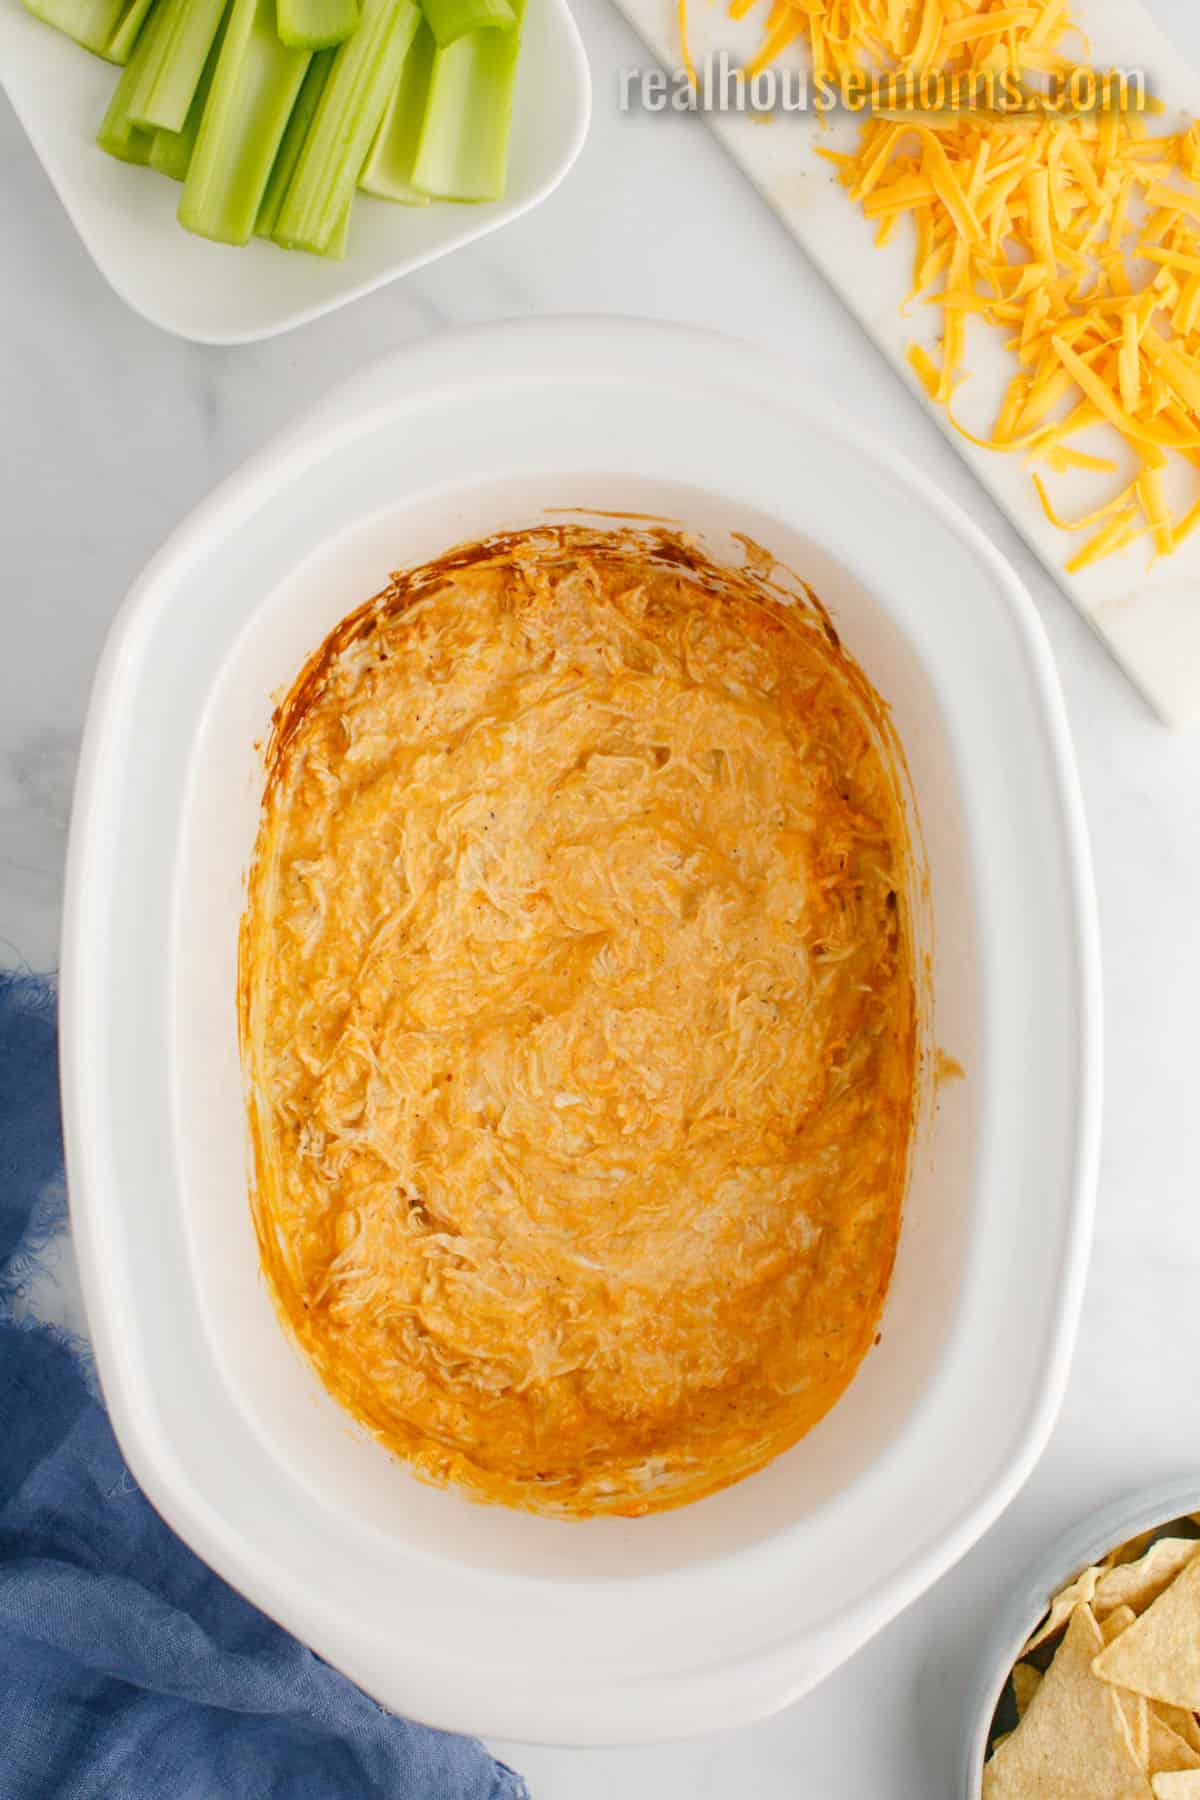 Best Crock-Pot Buffalo Chicken Dip Recipe - How to Make Crock-Pot